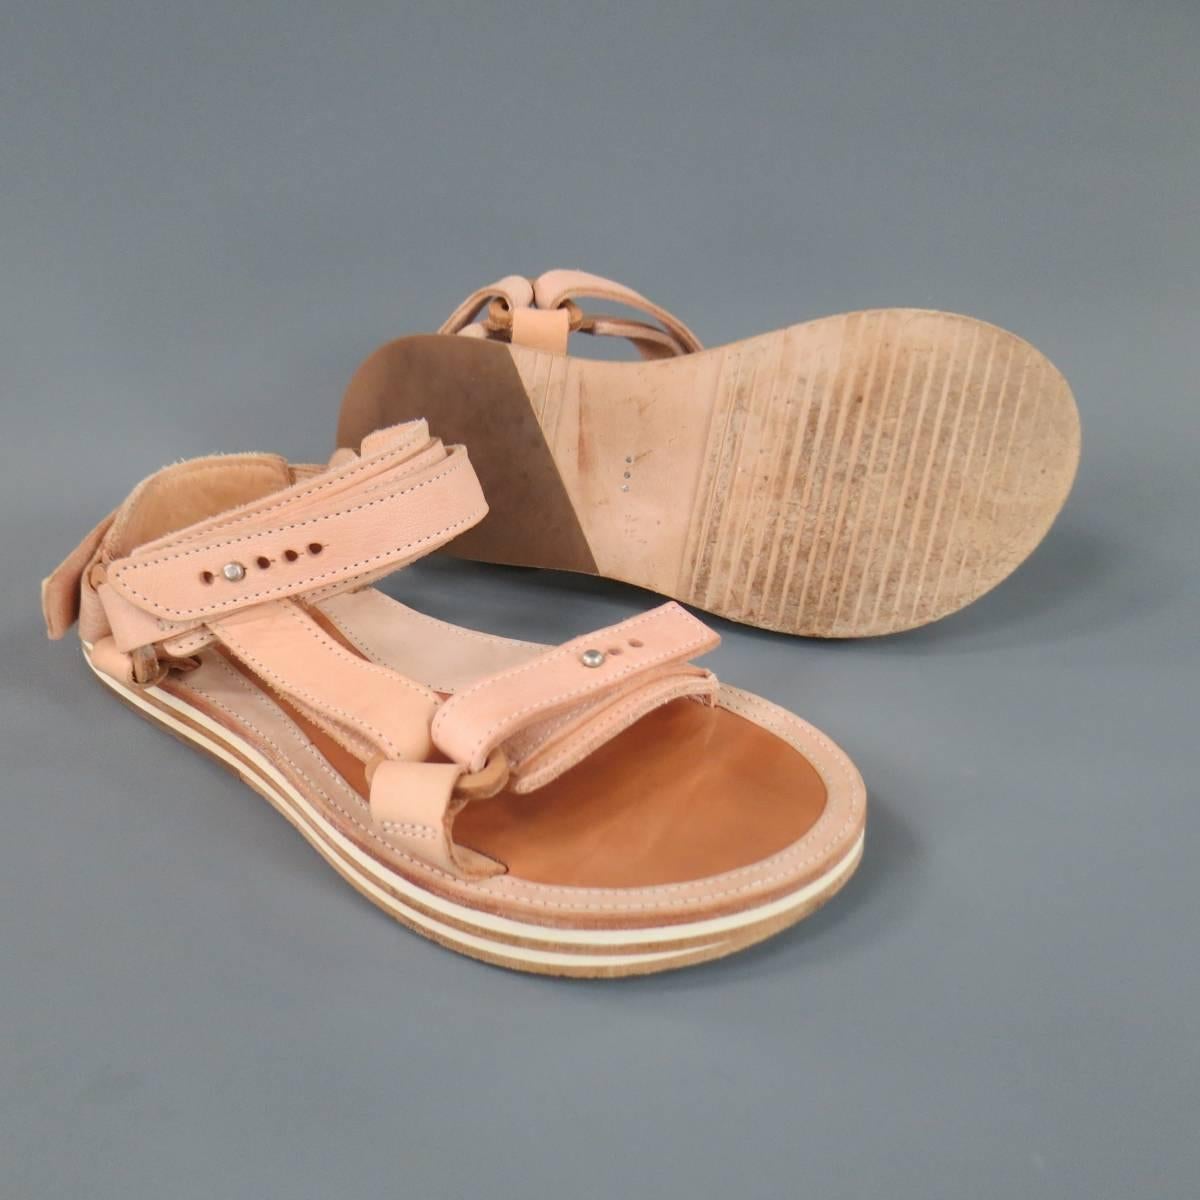 hender scheme sandals